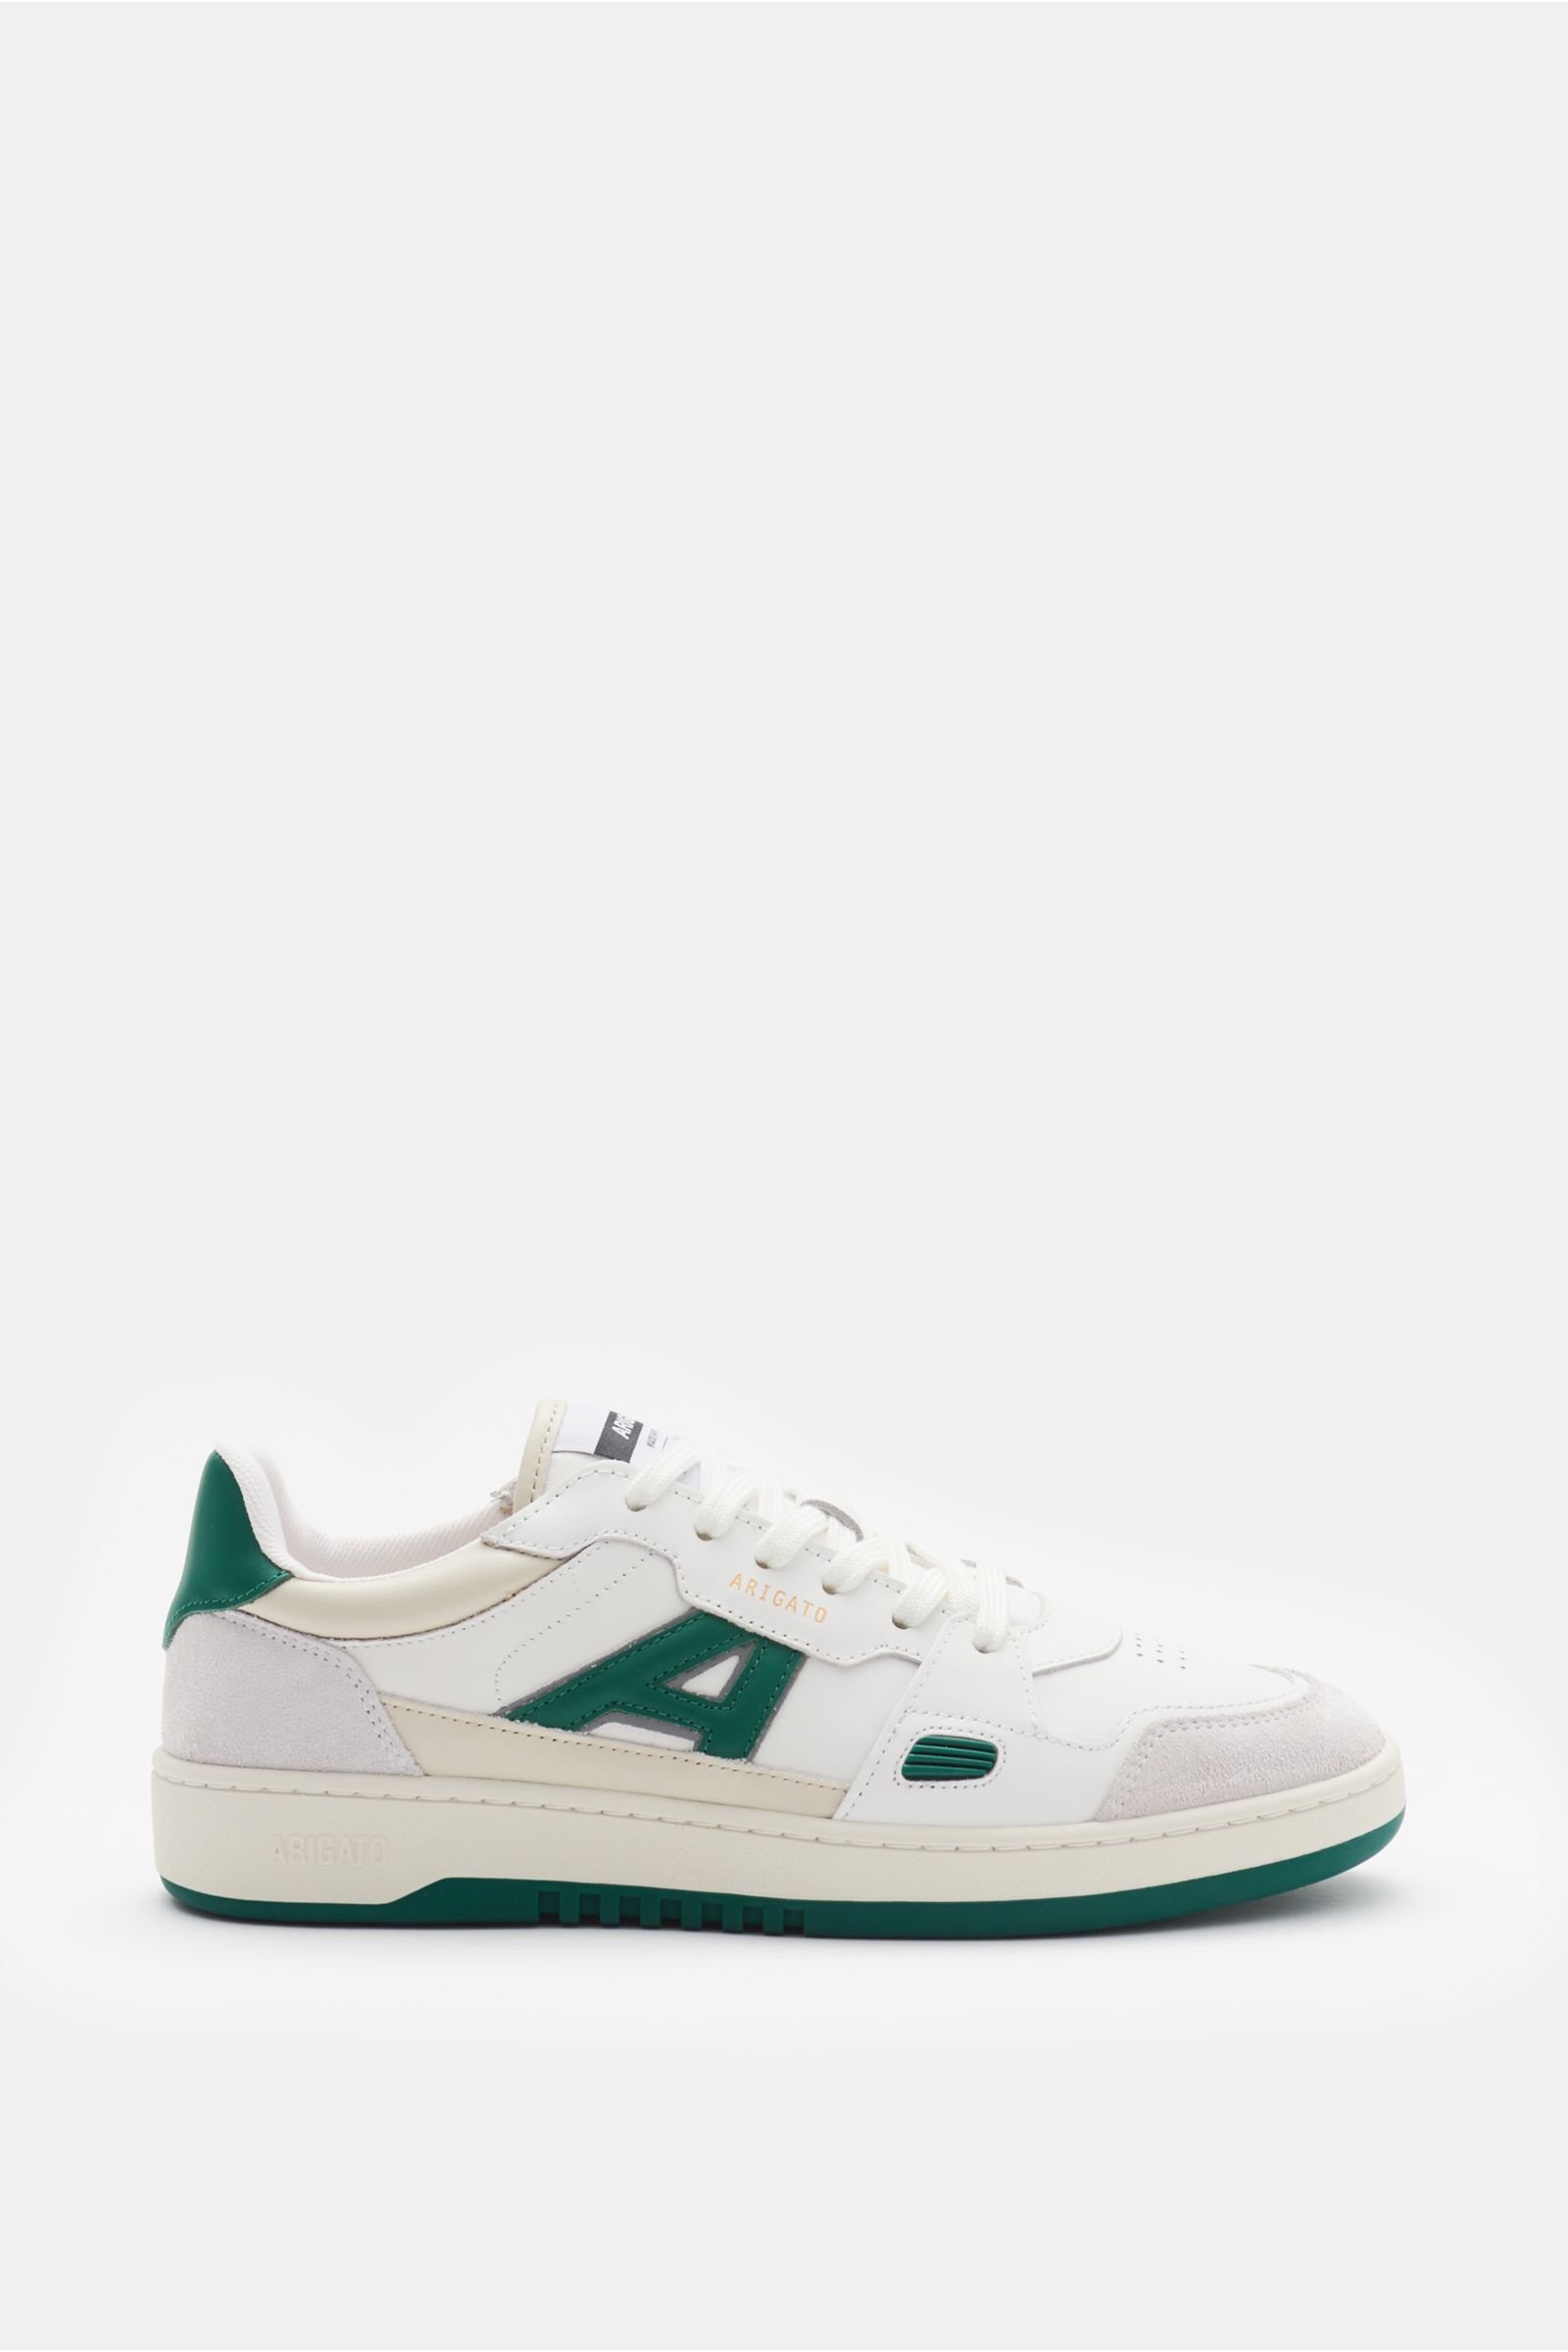 Sneakers 'A Dice Lo' white/dark green